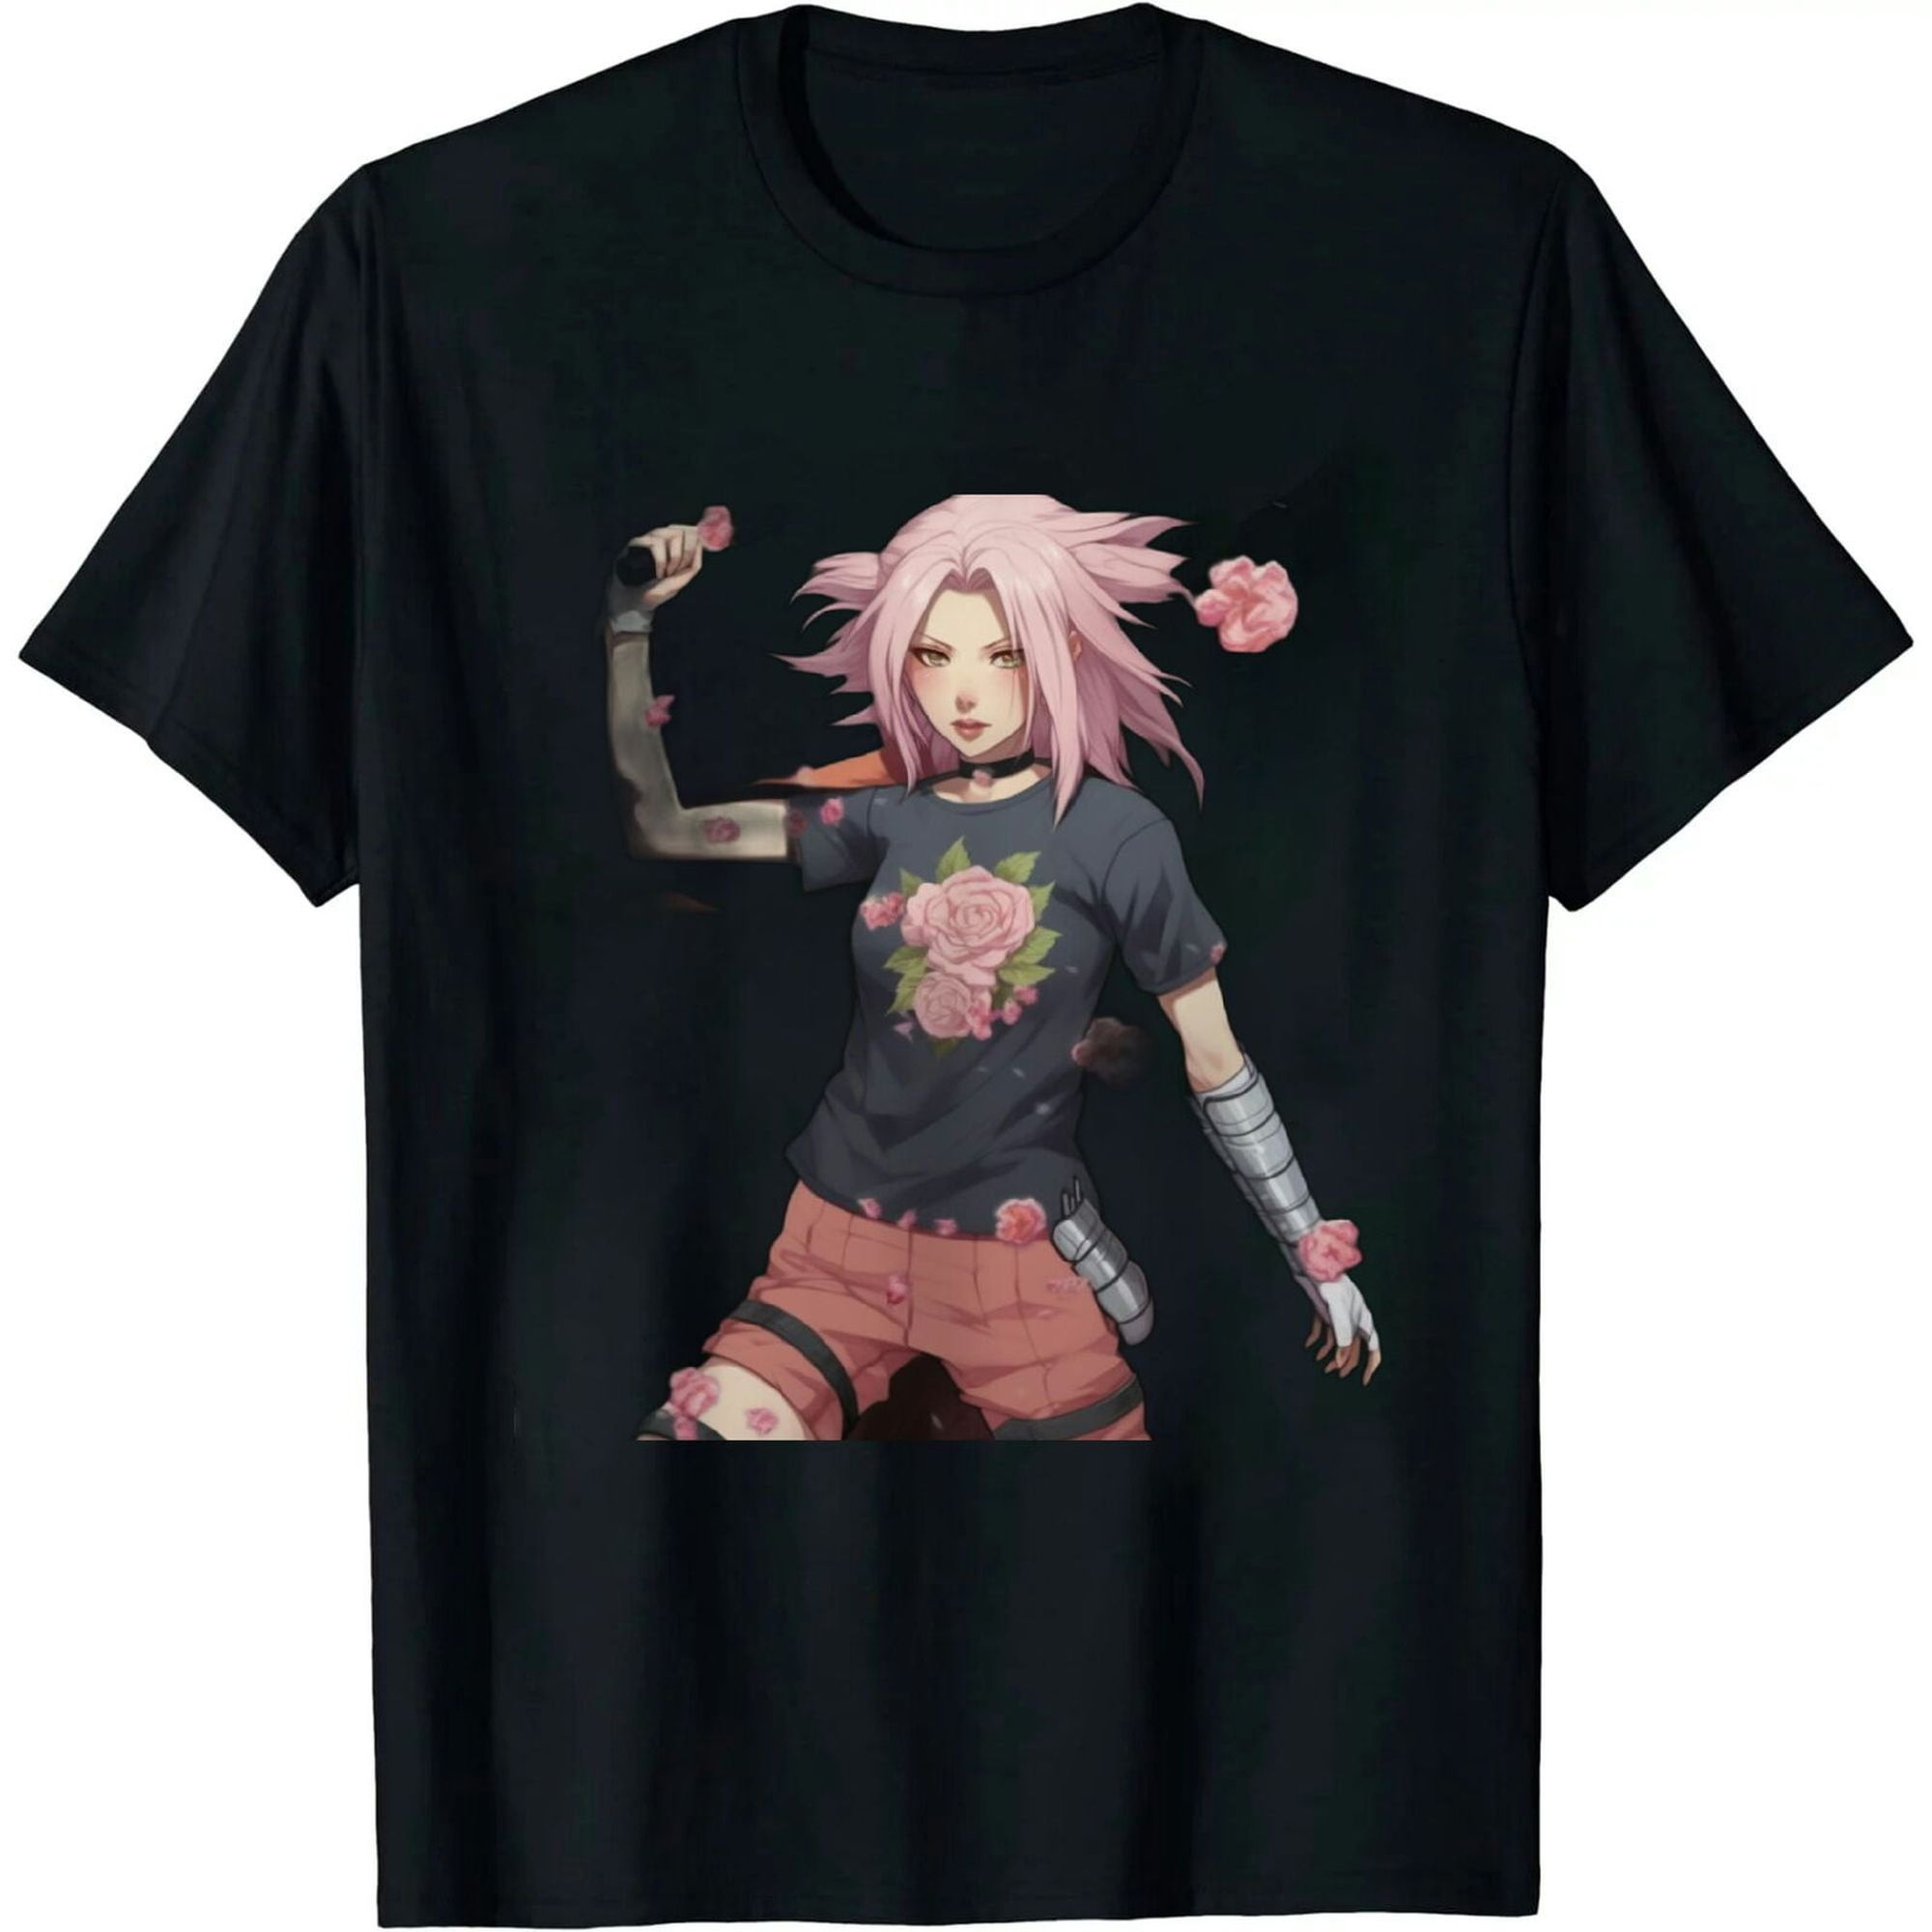 Sakura Blossoms in Full Bloom: Naruto Shippuden Inspired T-Shirt for ...